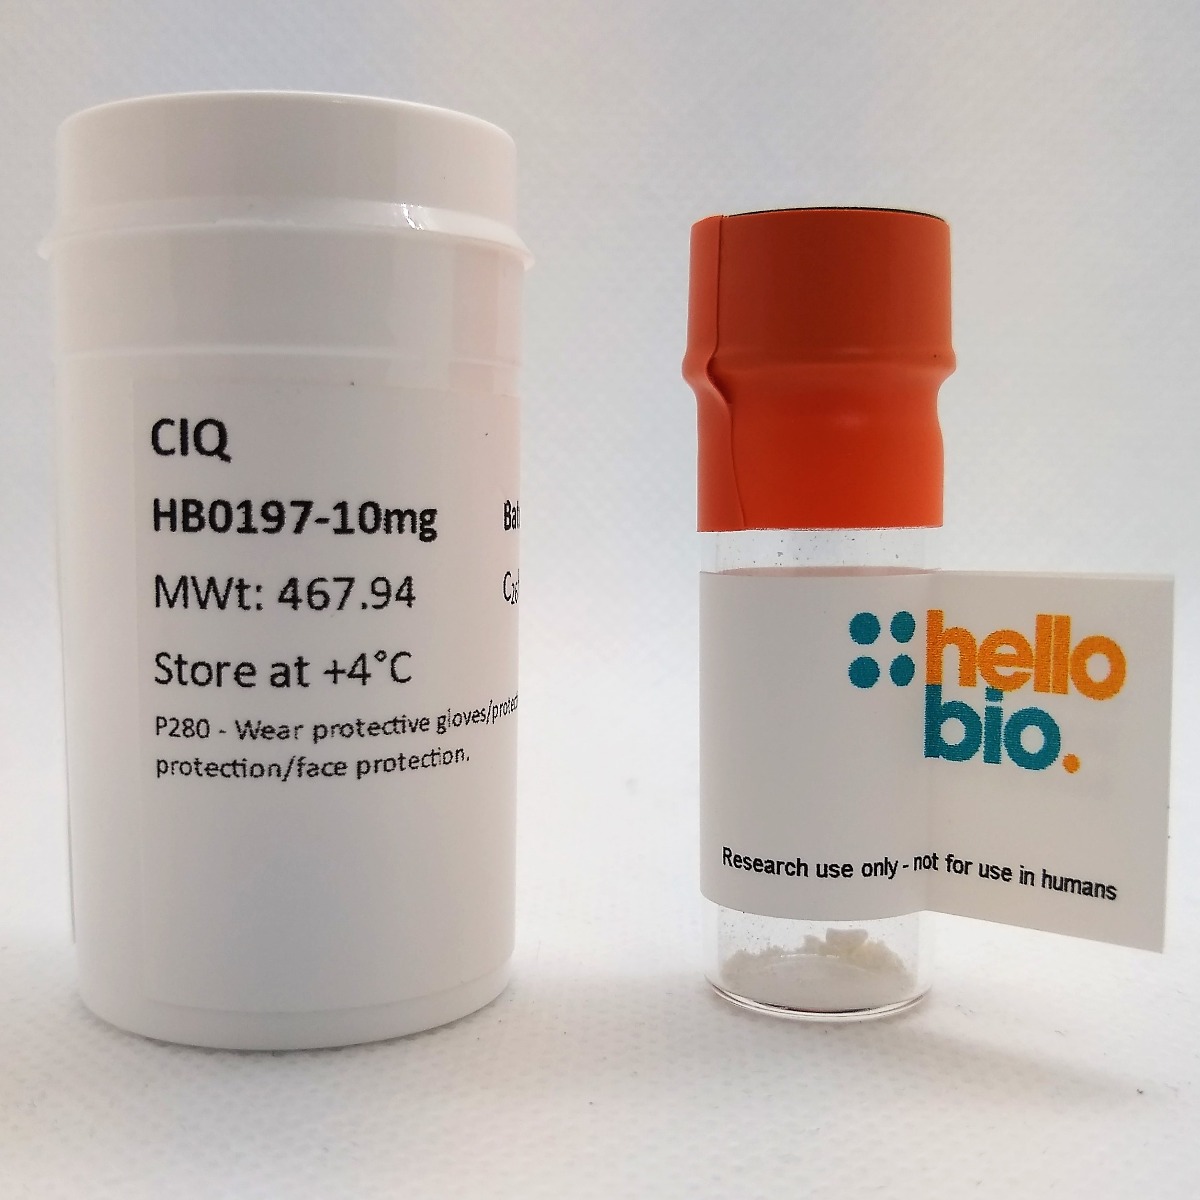 CIQ product vial image | Hello Bio